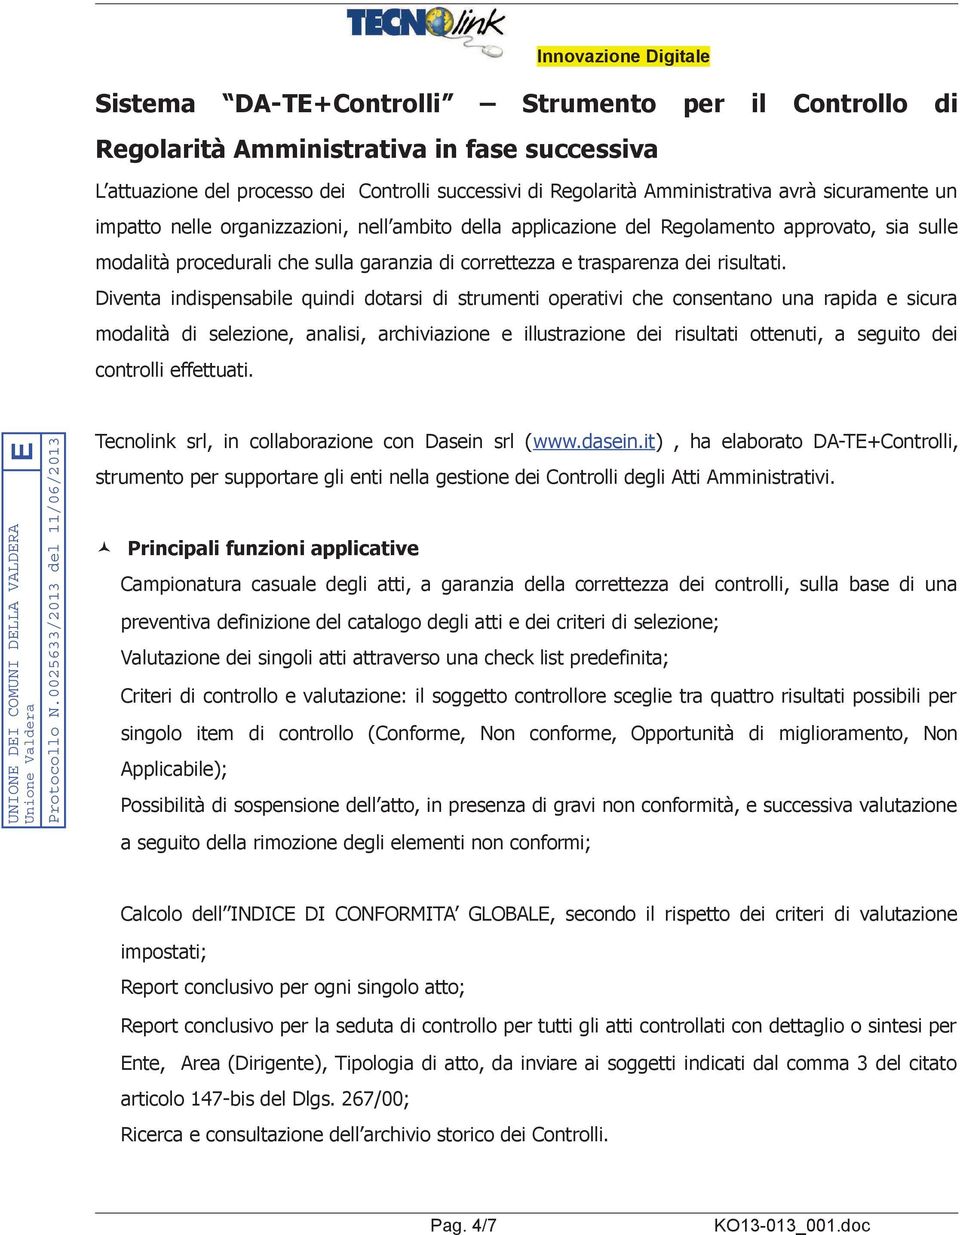 DELLA VALDERA Unione Valdera E Protocollo N.0025633/2013 del "> 5?